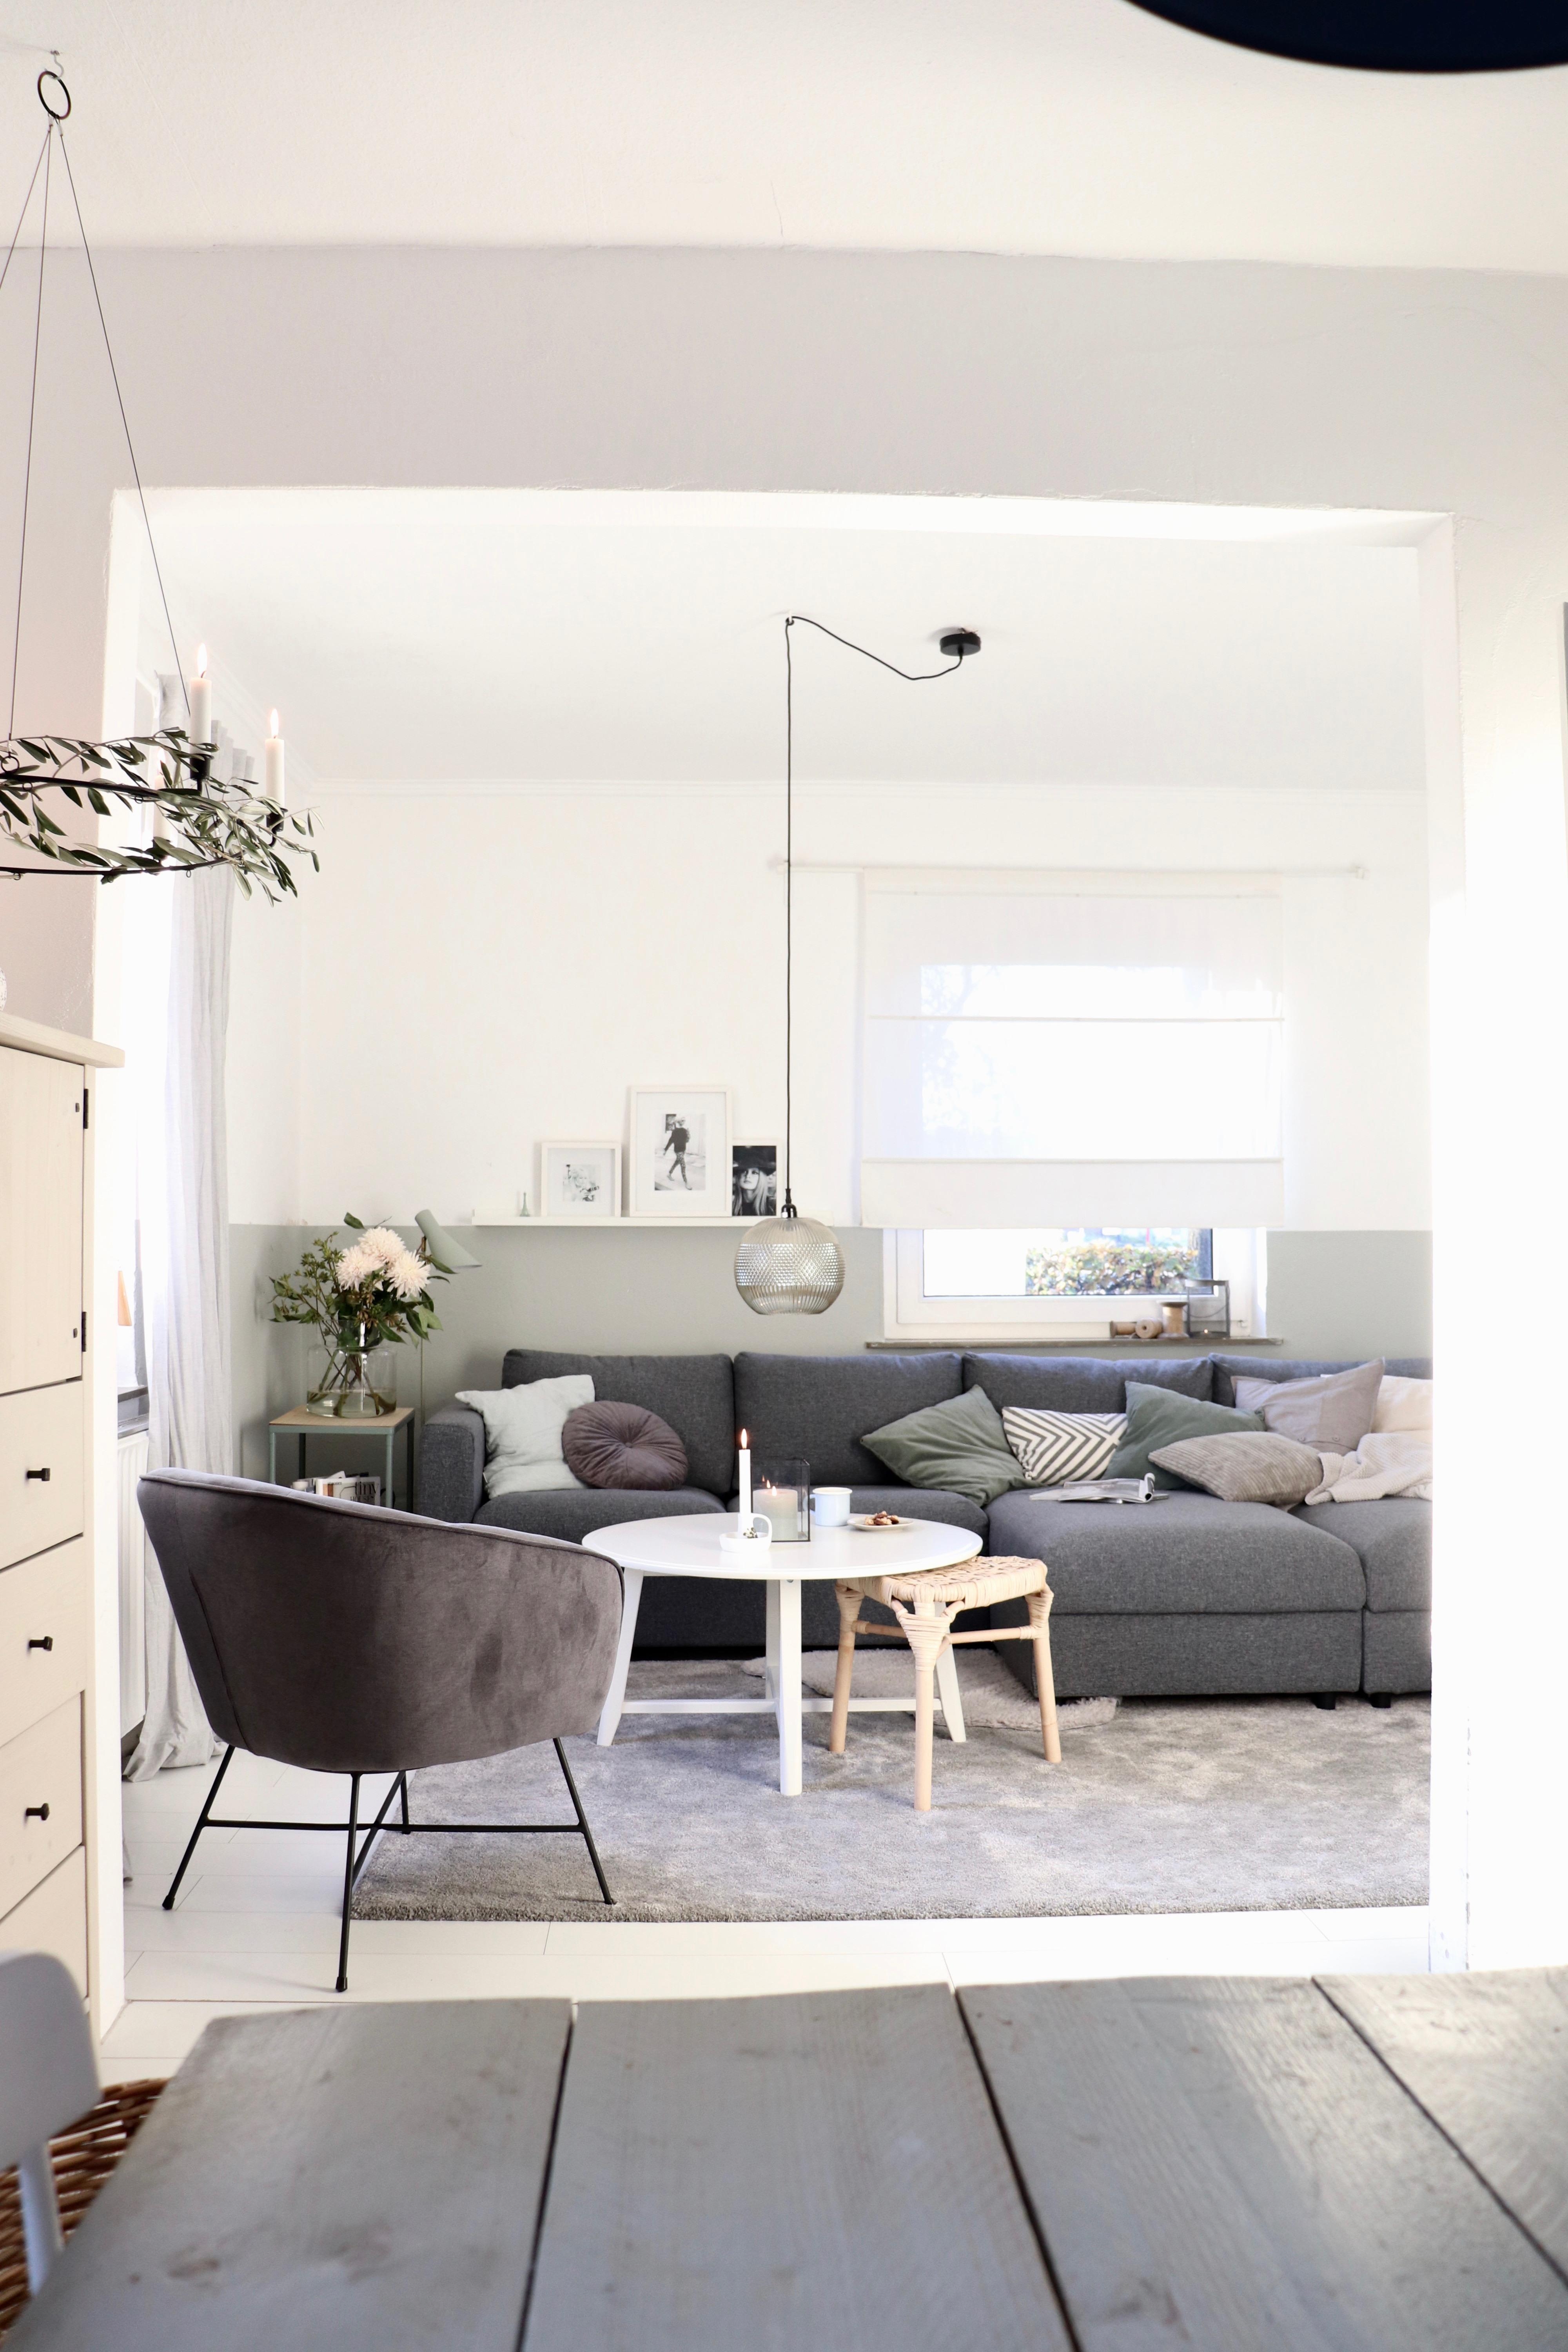 Glücklich mit neuem Sofa!

#thinkbig#grey#scandinavian#neutral#pastell#winter#livingroom